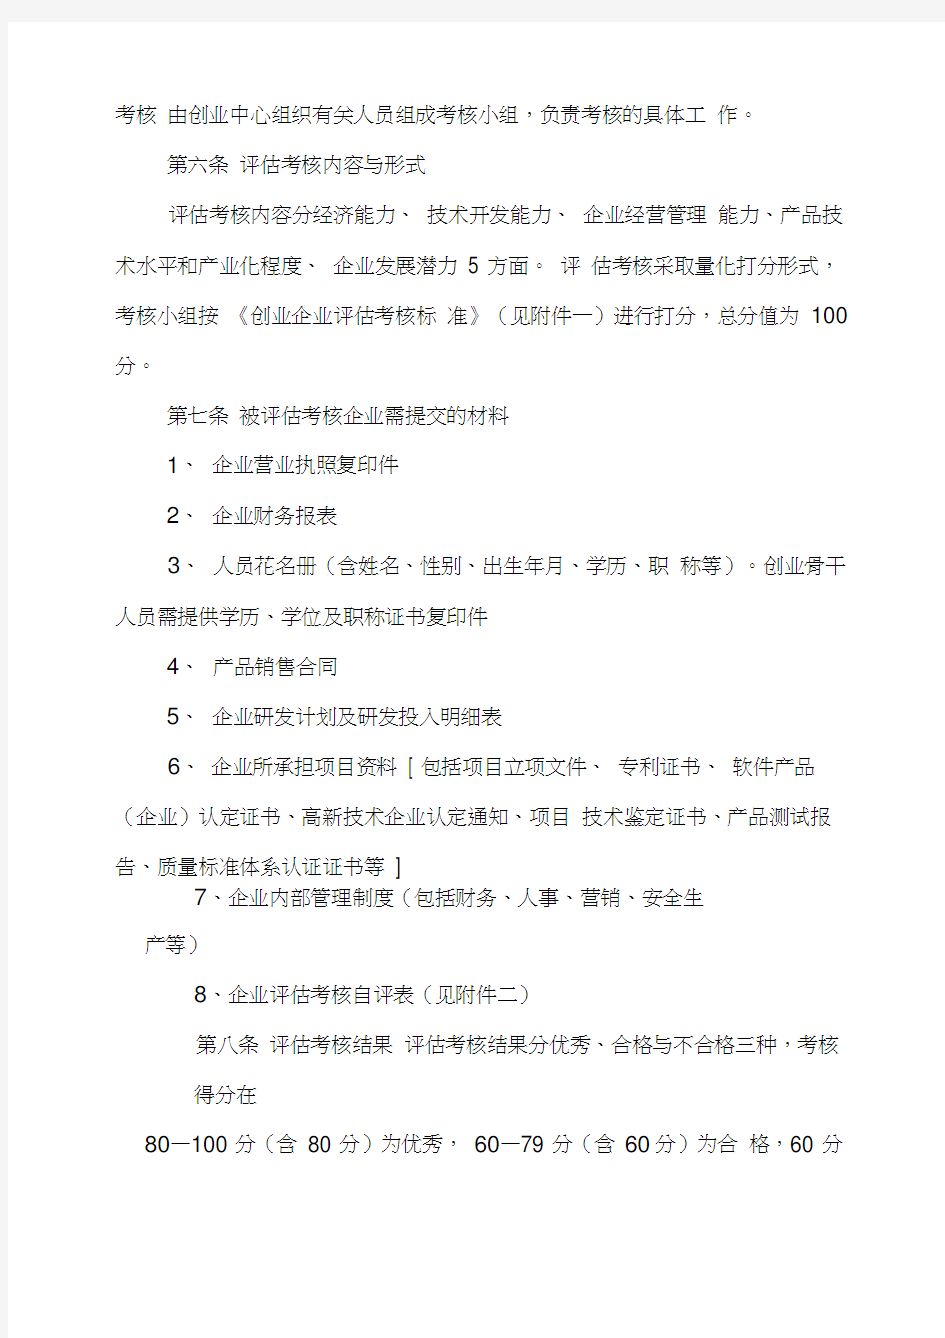 宁波市科技创业基地孵化企业评估考核办法(试行)